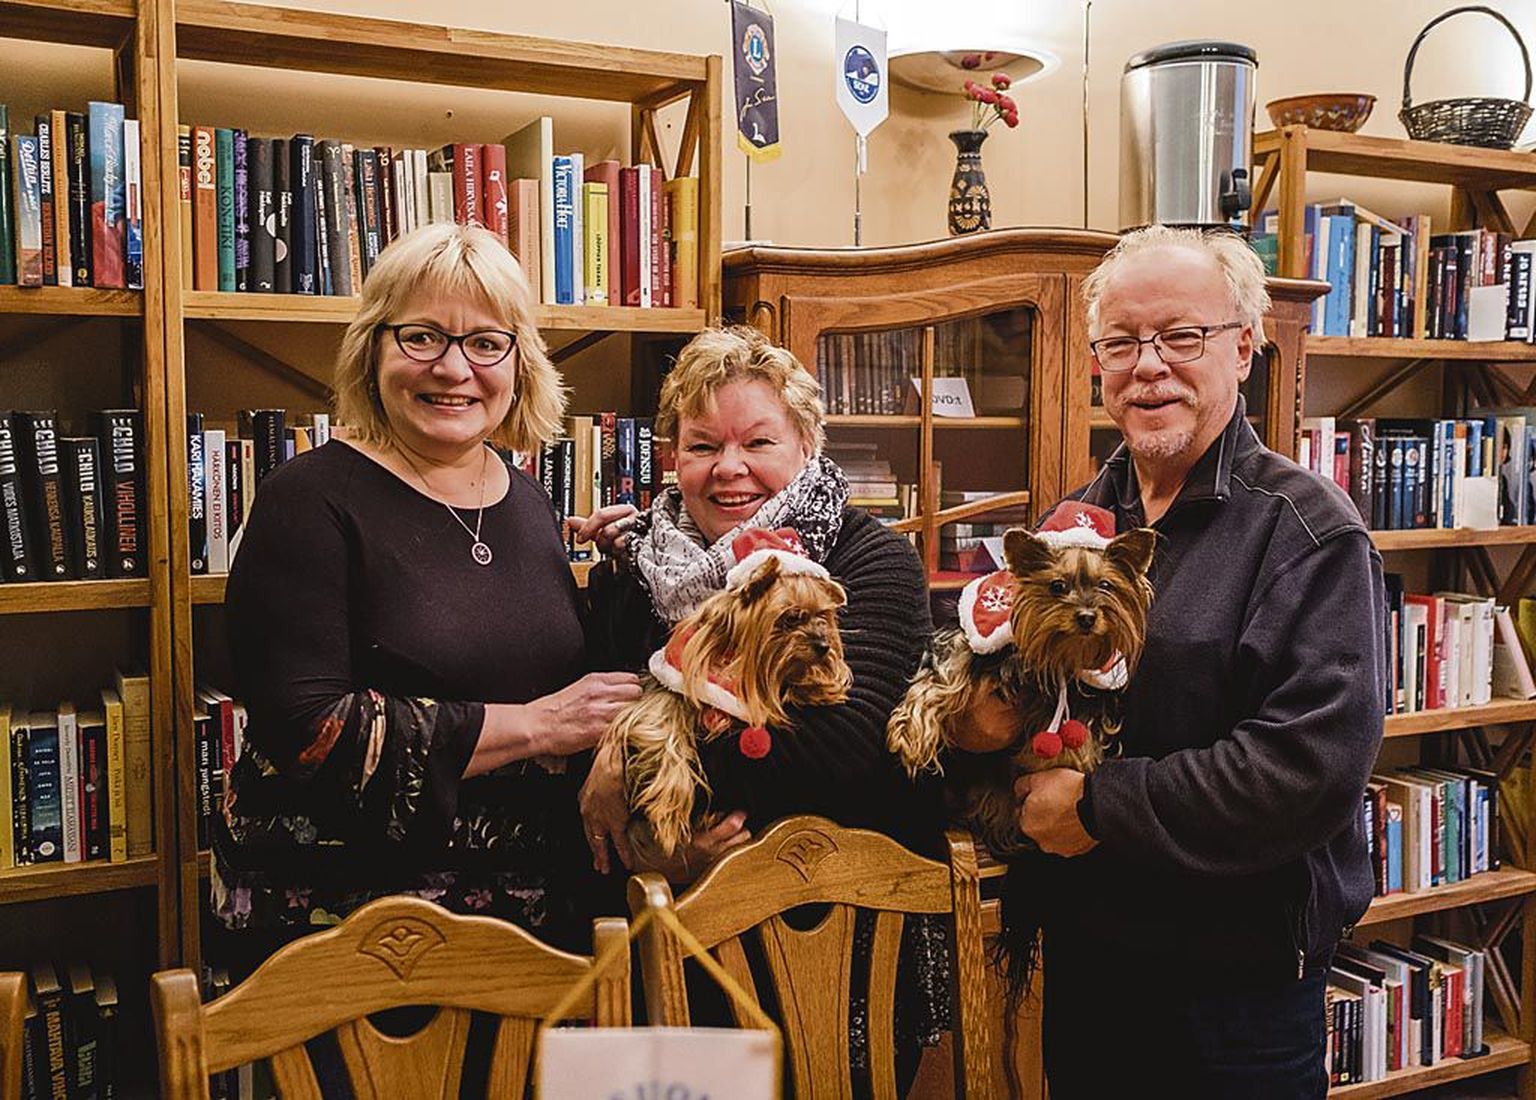 Pärnu Soome seltsi raamatukogu on seltsi liikmete üks kokkusaamiskohti, kus toimuvad ka eesti keele tunnid. Raamatukogu tutvustasid Kaija Rytkönen (vasakul) ning Sirpa ja Joukka Virtanen, süles oma päkapikk-koerad Lilli ja Mette.